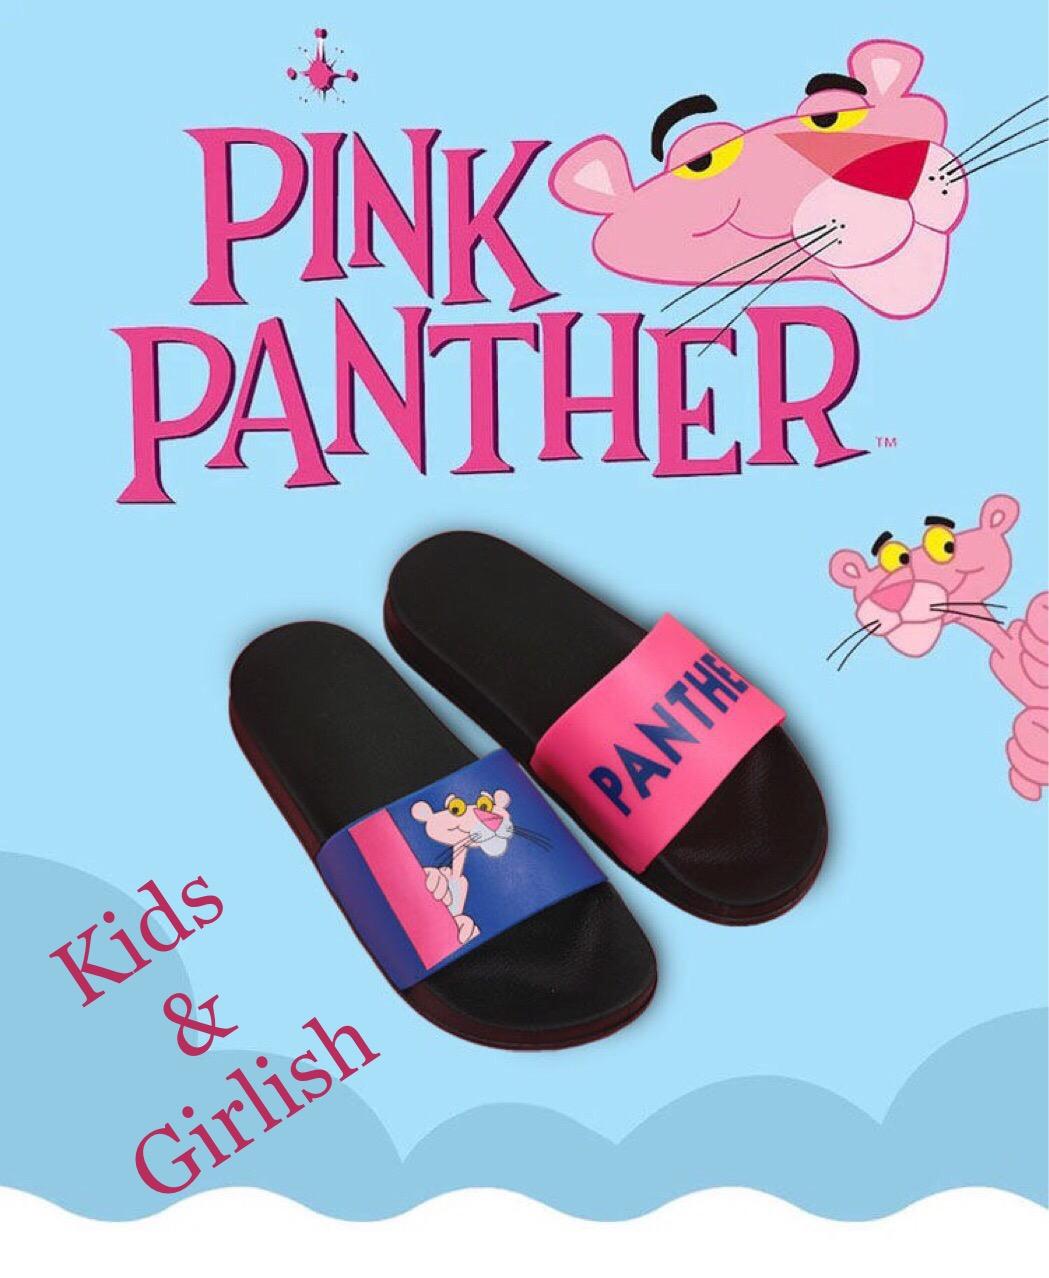 ของมาใหม่!!! รองเท้าแตะผู้หญิง Panther -Piggy รองเท้าแตะยางพื้นนุ่มใส่สบาย ใซร์36-40วัดไซร์ก่อนสั่งค่ะ(ถ้าลูกค้าเท้ายาวหรืออวบให้เพิ่มขนาด 1 ไซต์ค่ะ!!!)